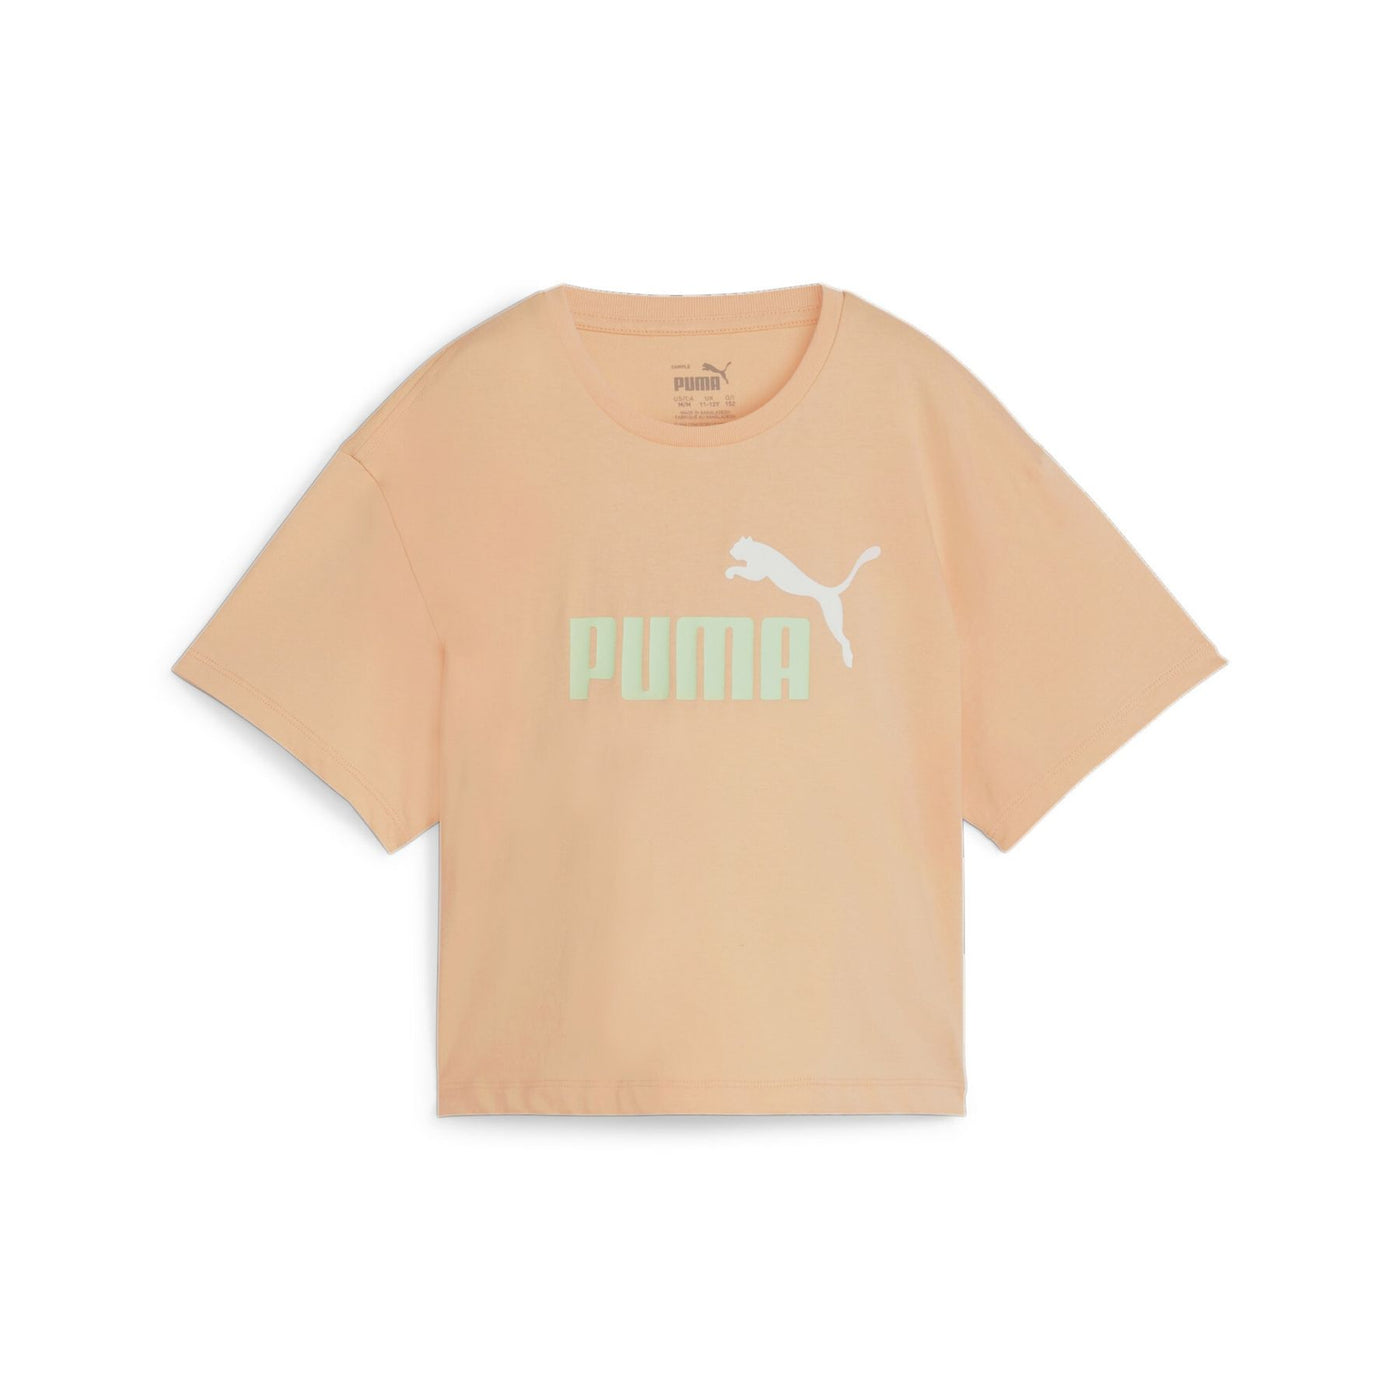 845346-45 - T-Shirt - Puma